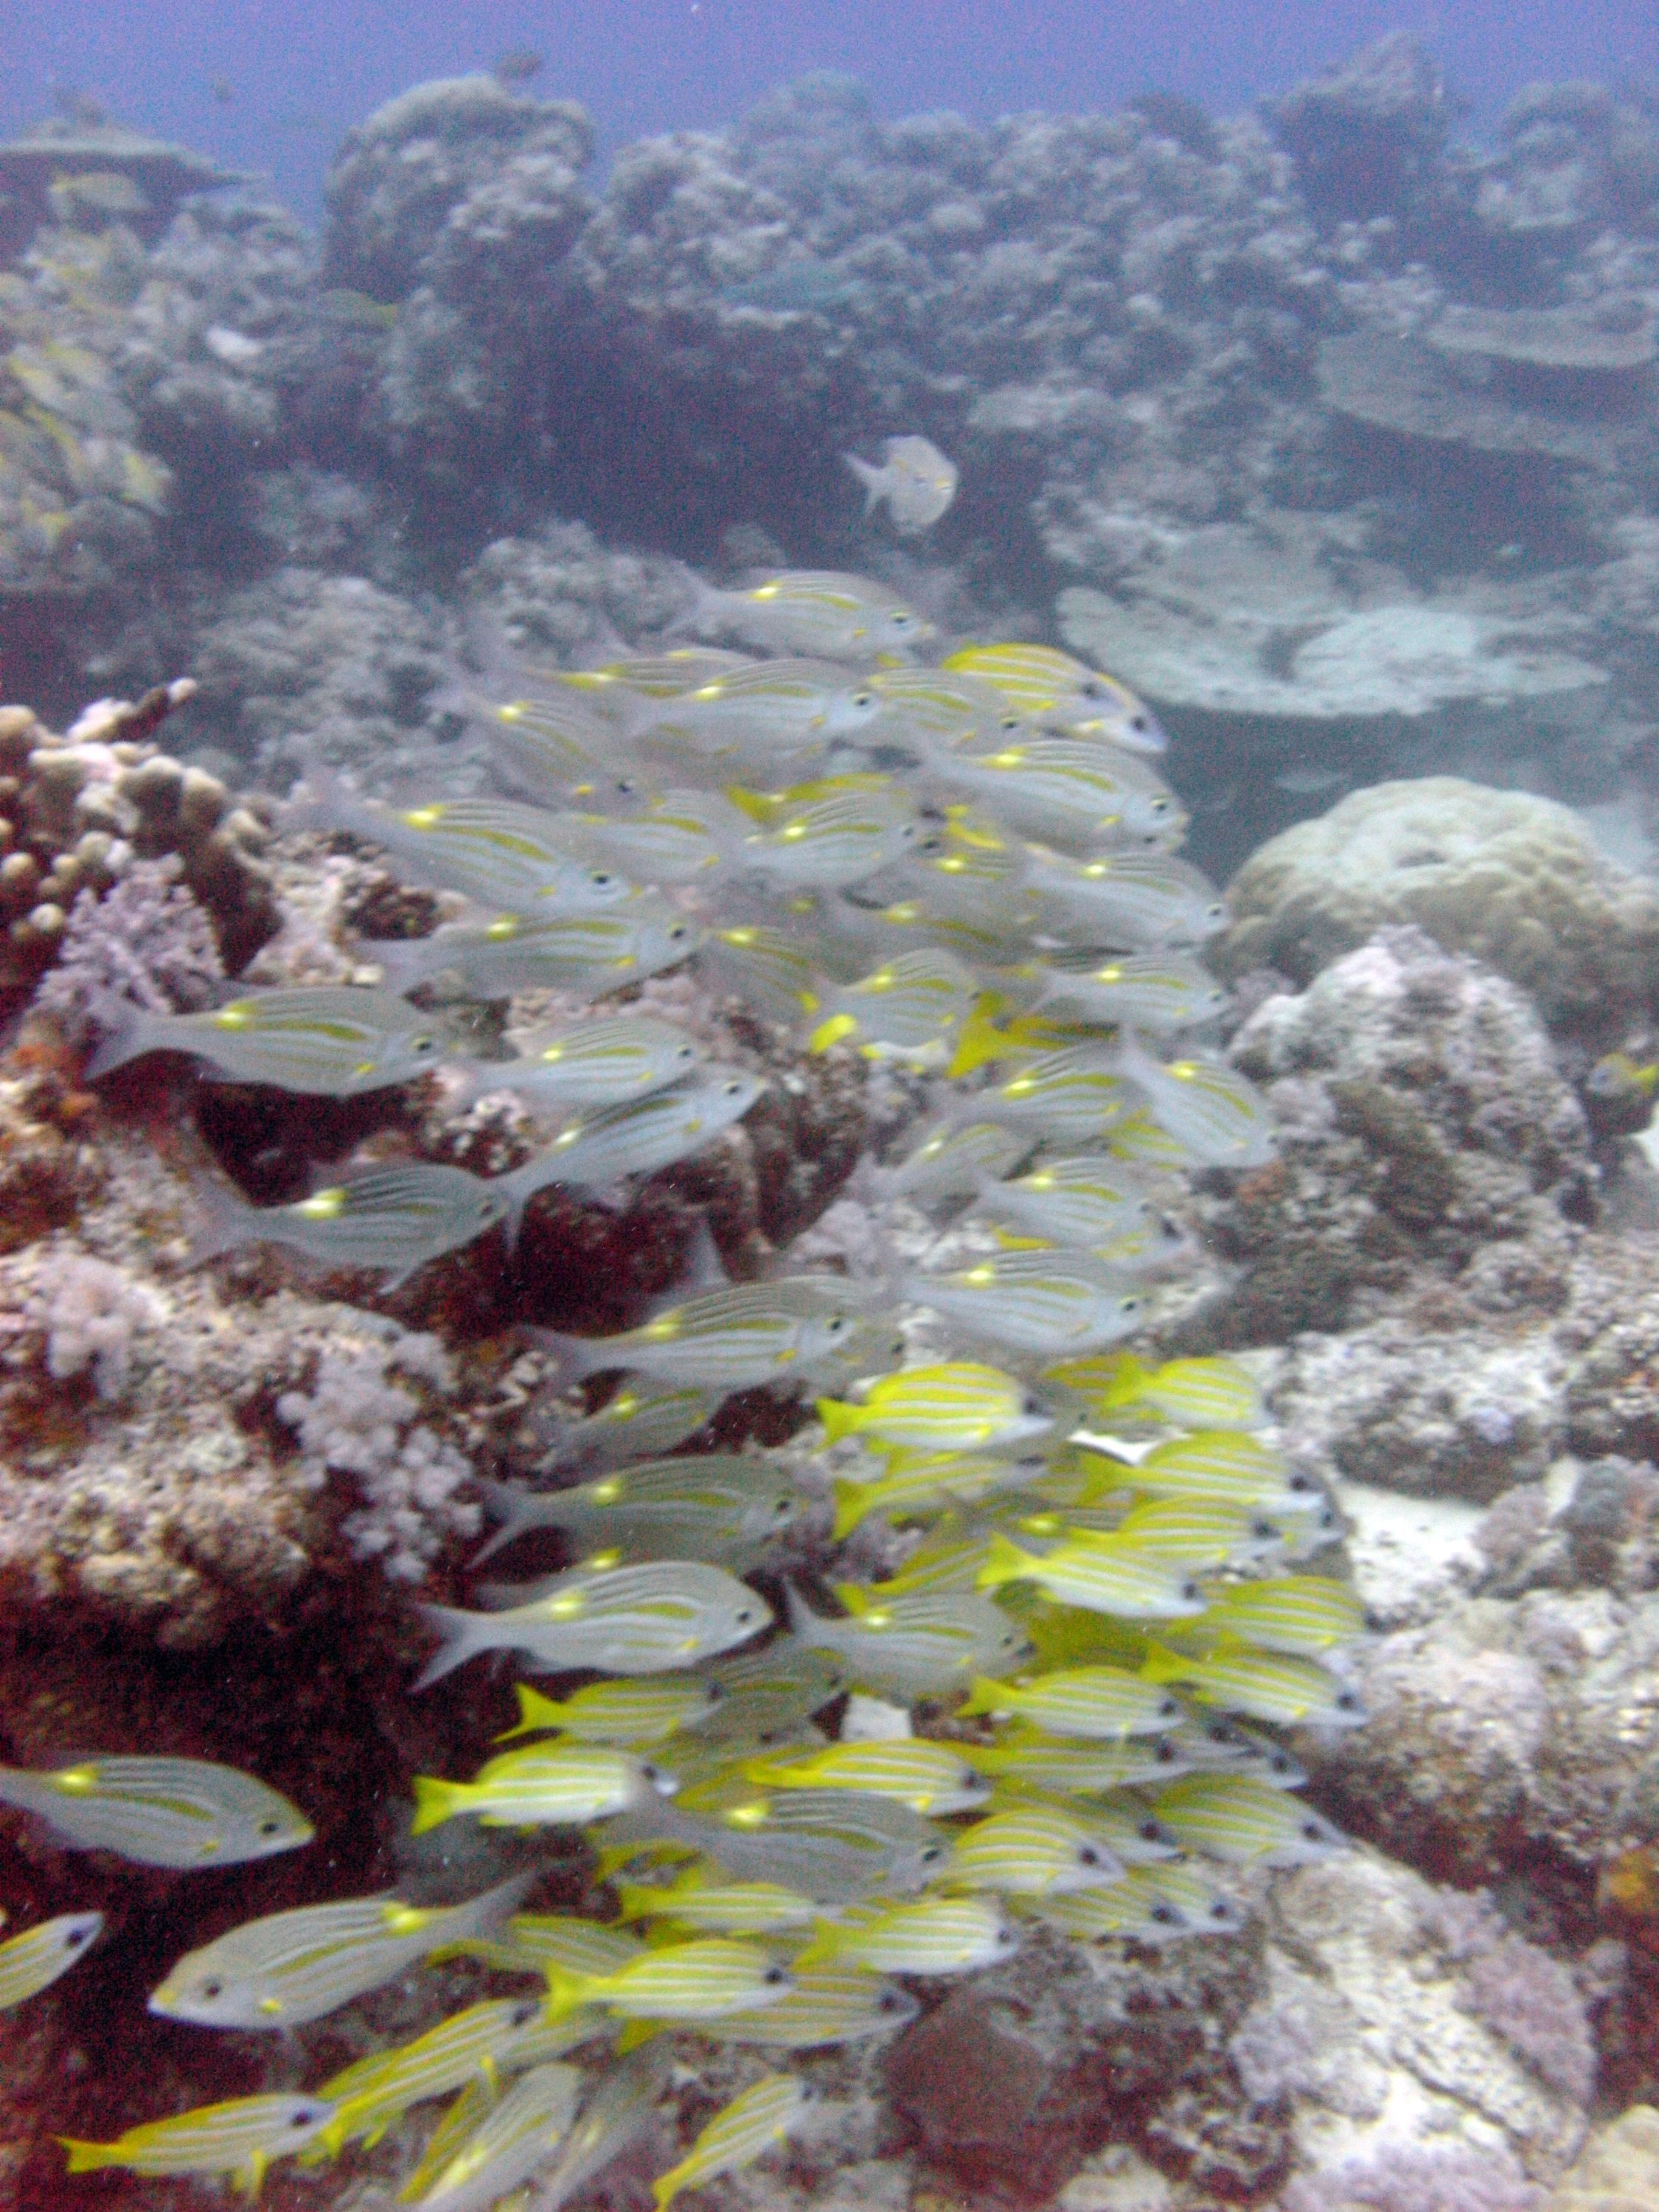 Schooling fish - Mauritius